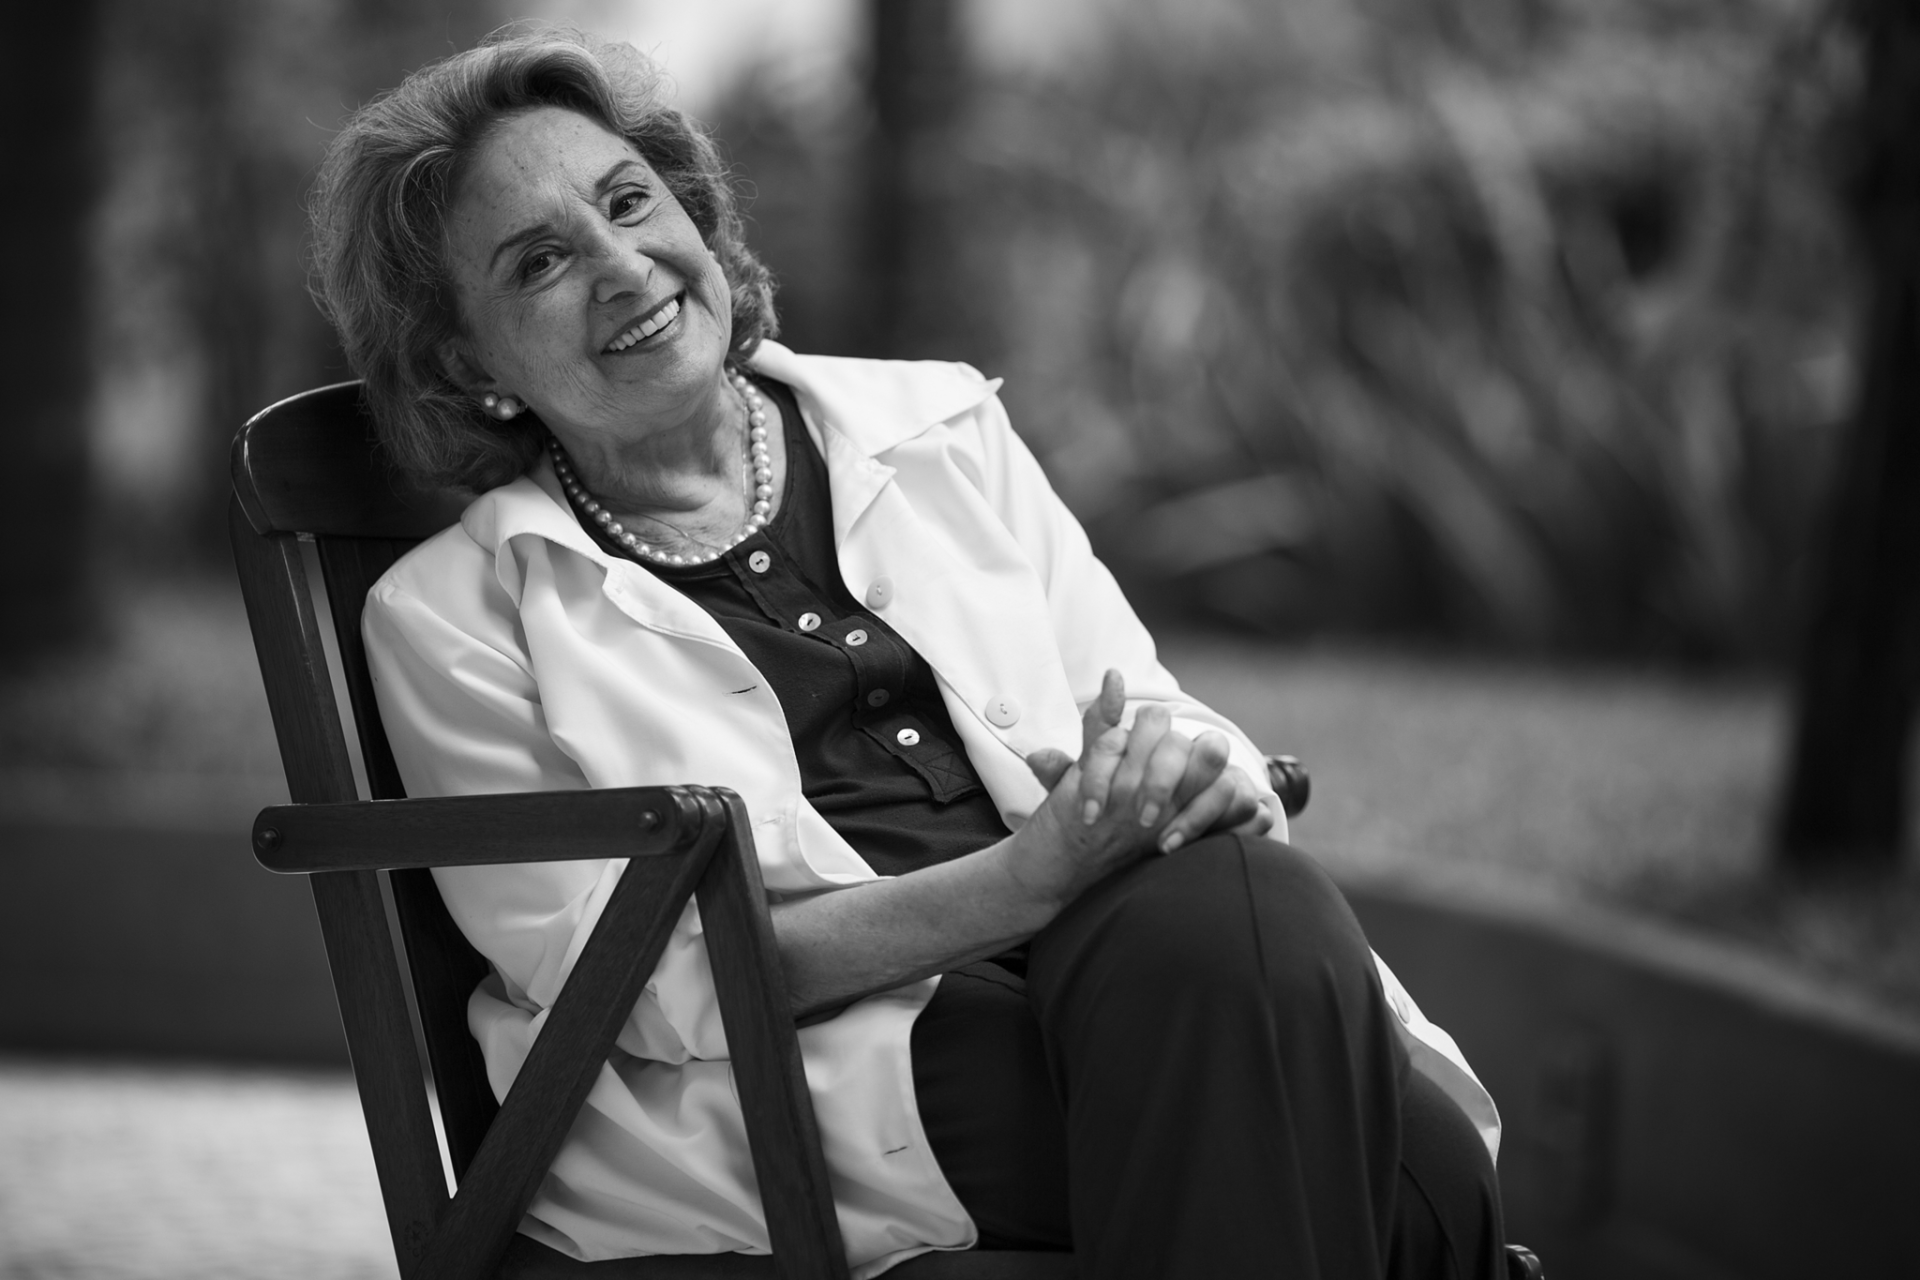 Morreu a atriz brasileira Eva Wilma. Tinha 87 anos